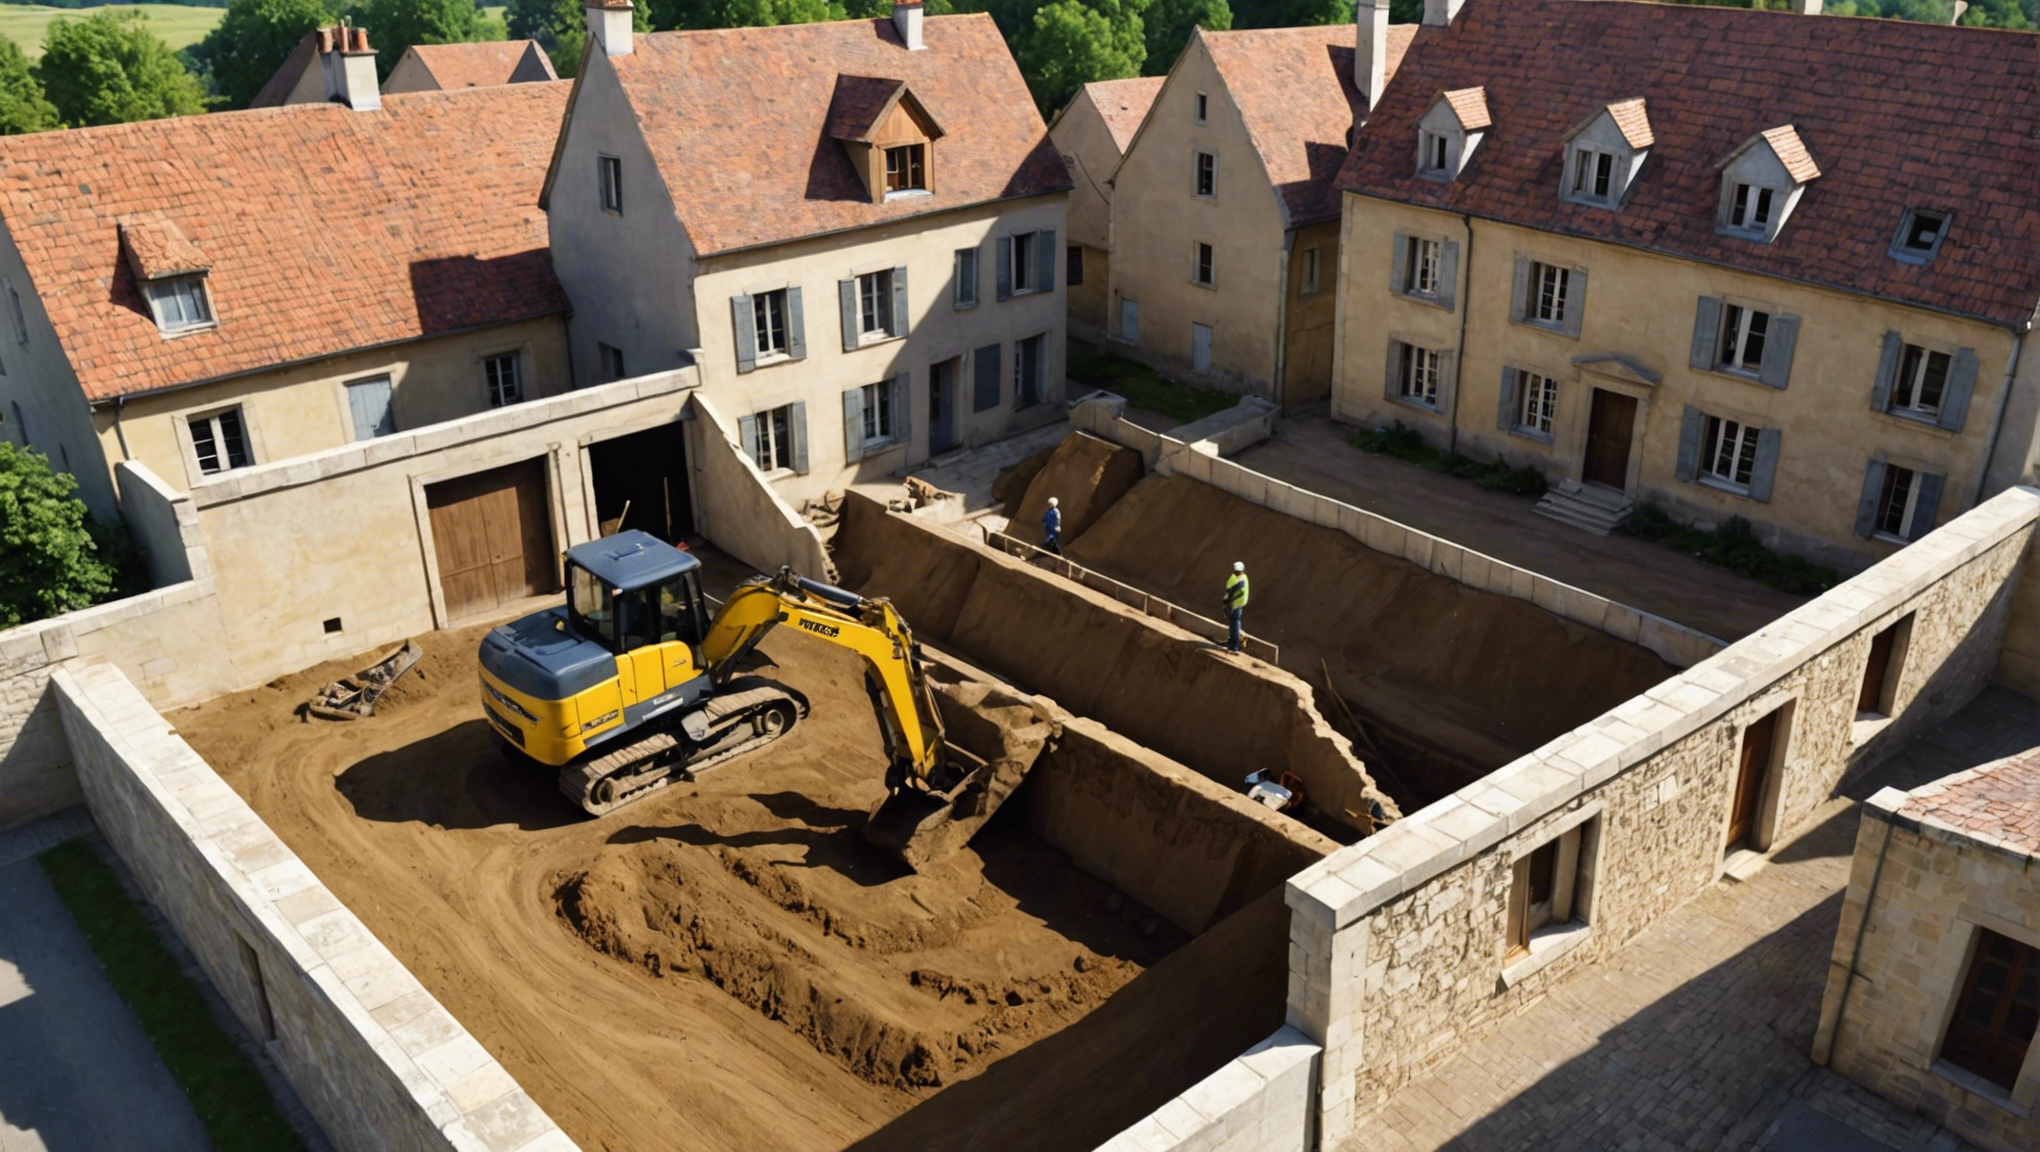 service de terrassement de maison à dijon avec expertise et professionnalisme. contactez-nous pour réaliser vos projets de terrassement dans la région de dijon.